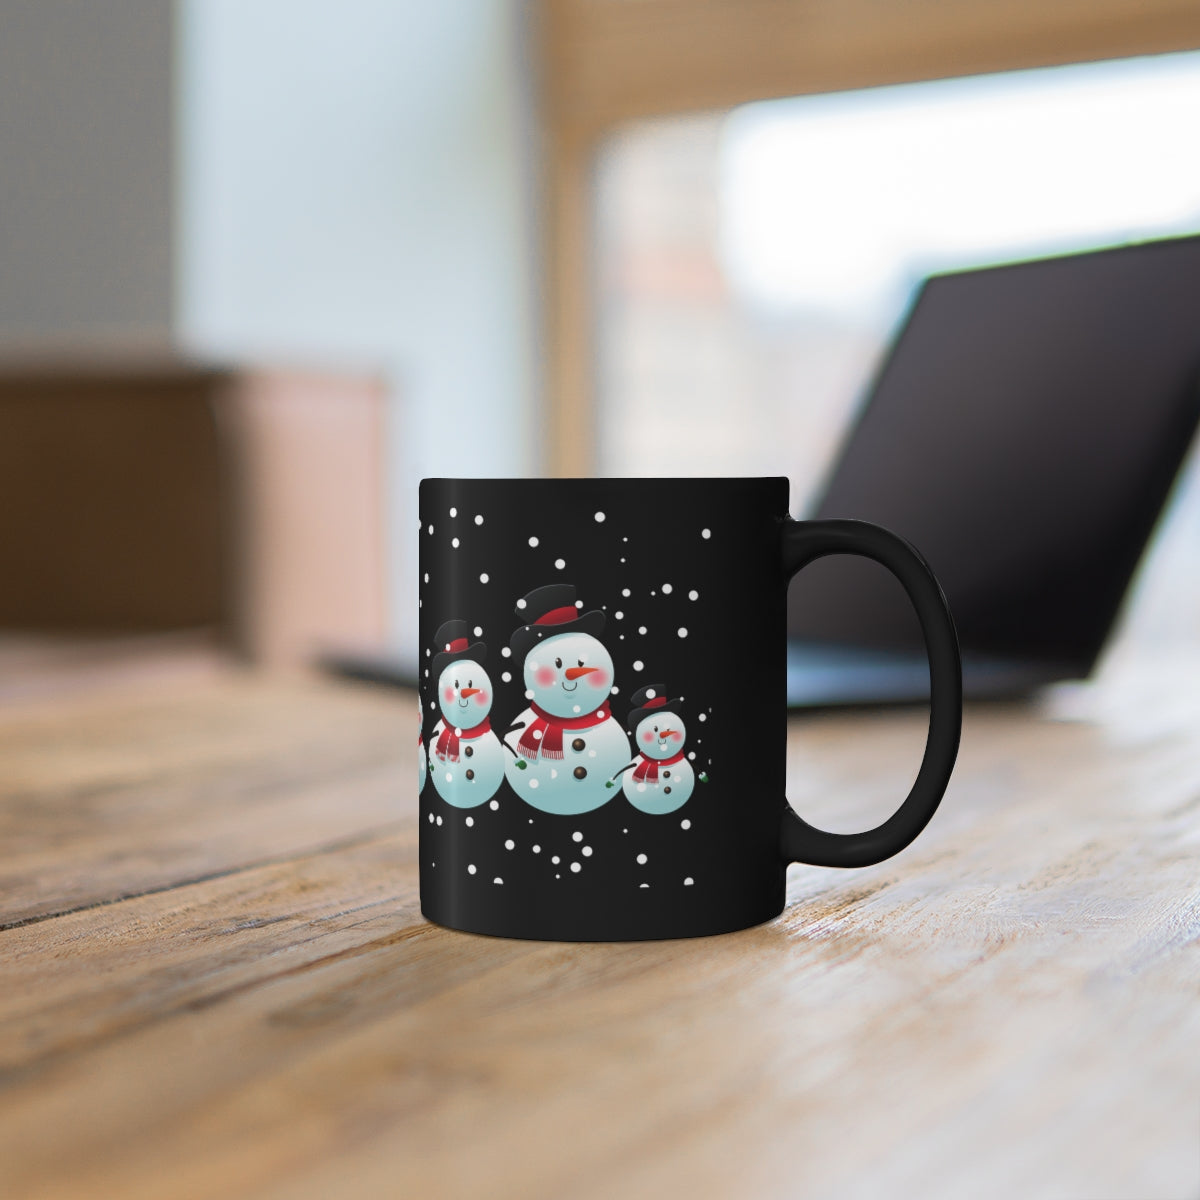 Snowman Mug / Black Christmas Mug / Snowman Decor